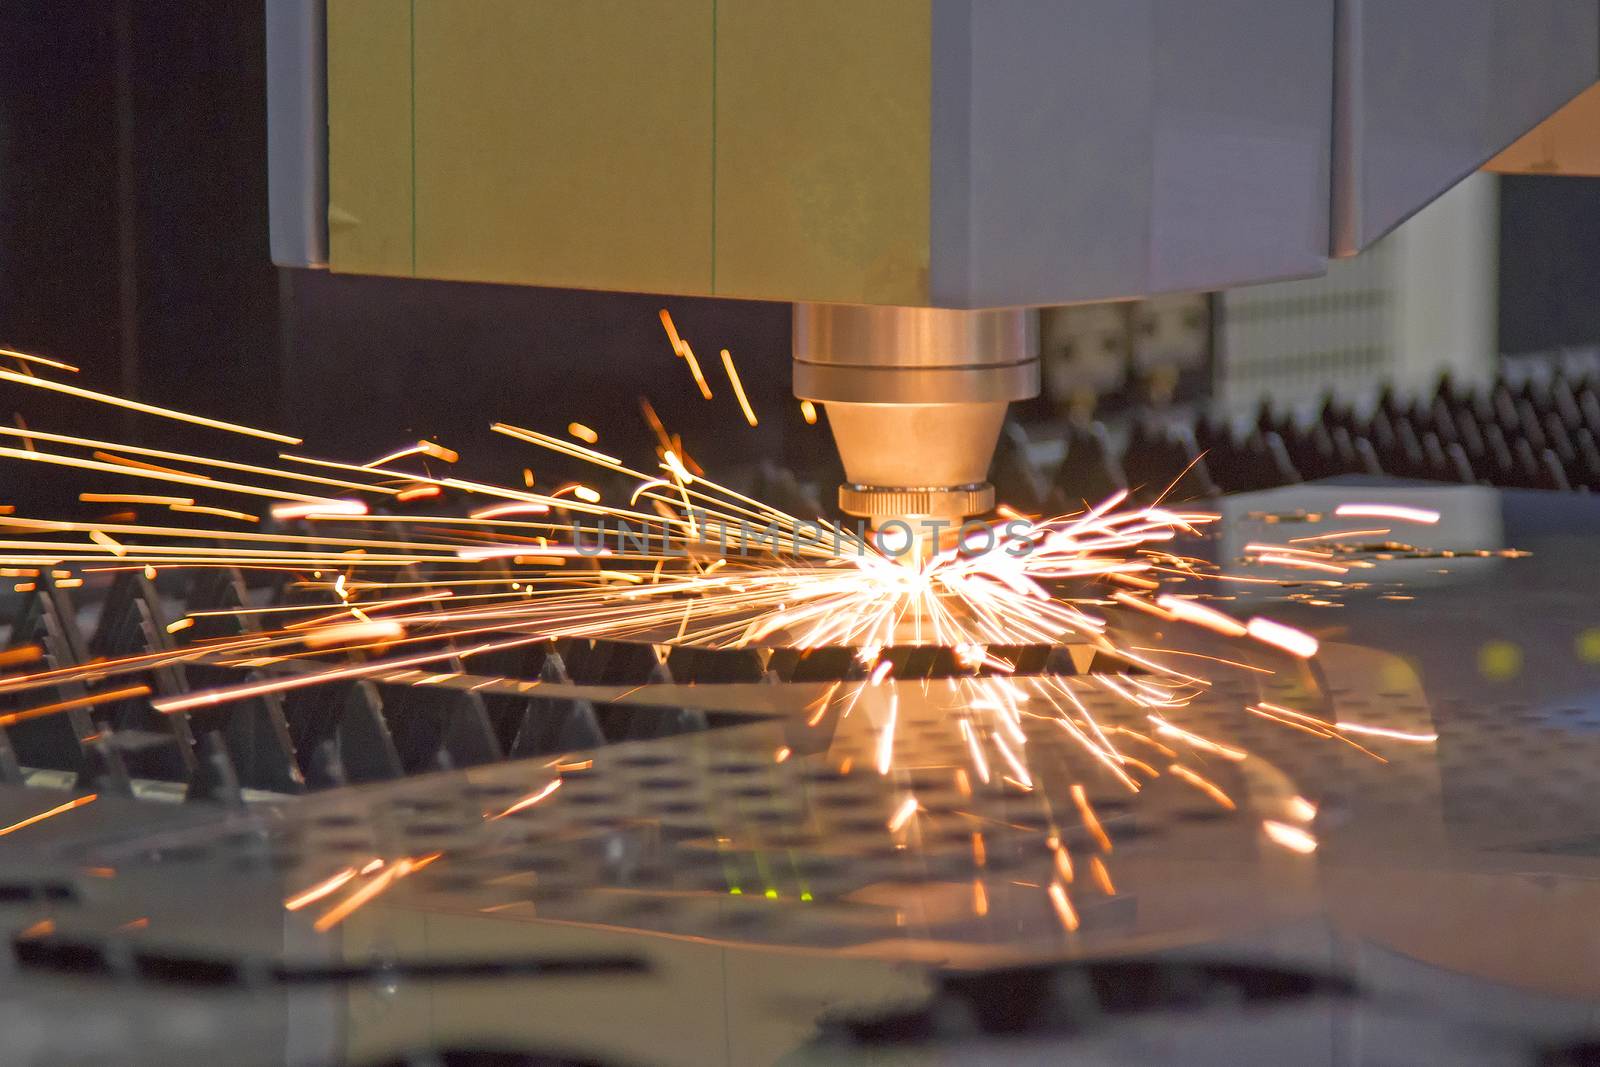 Laser sheet metal cutting machine Cutting work by TakerWalker